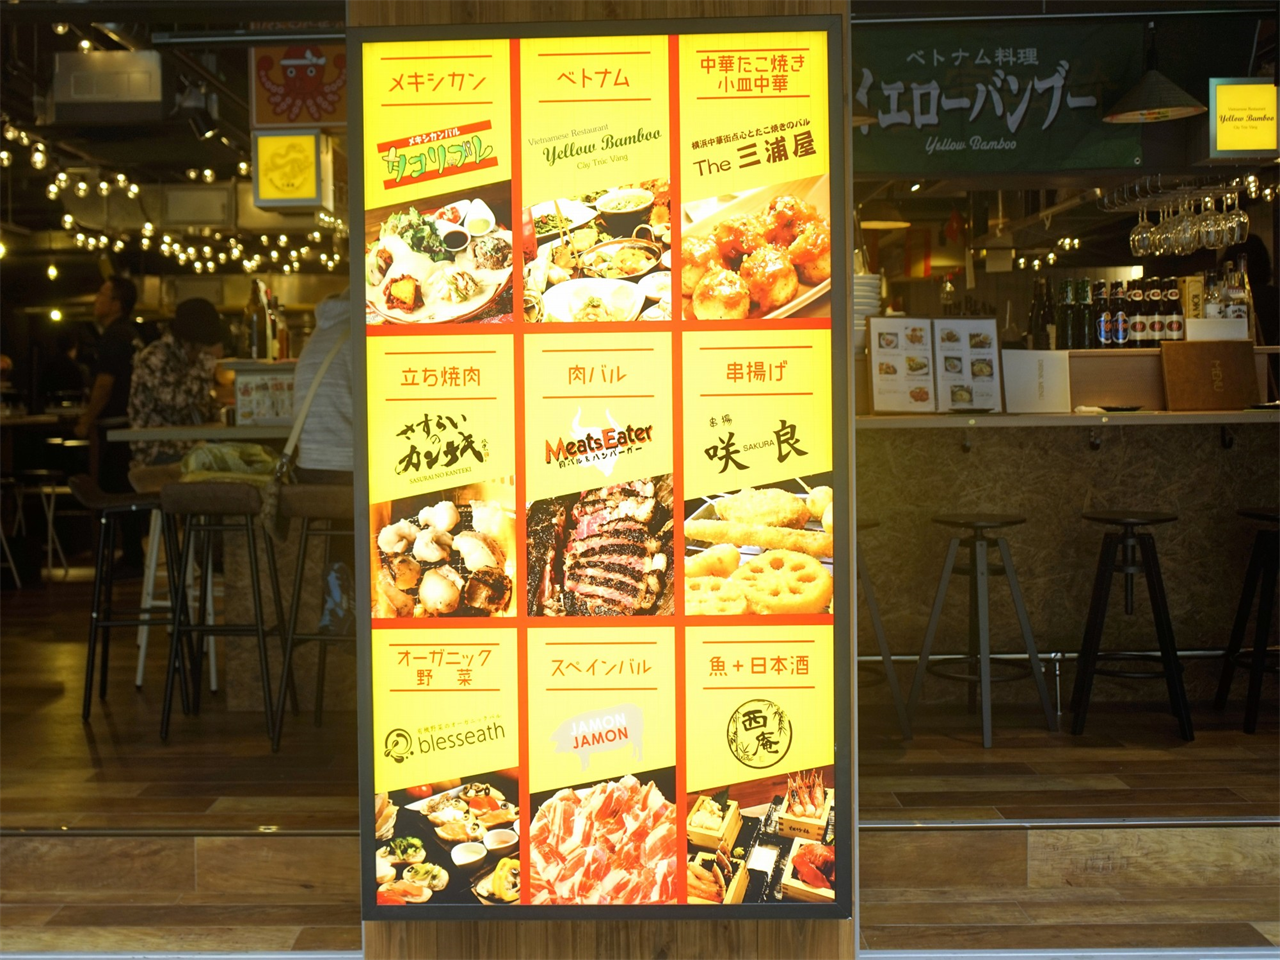 「蒲田バル横丁」には、色々なジャンルのお店が9店舗進出